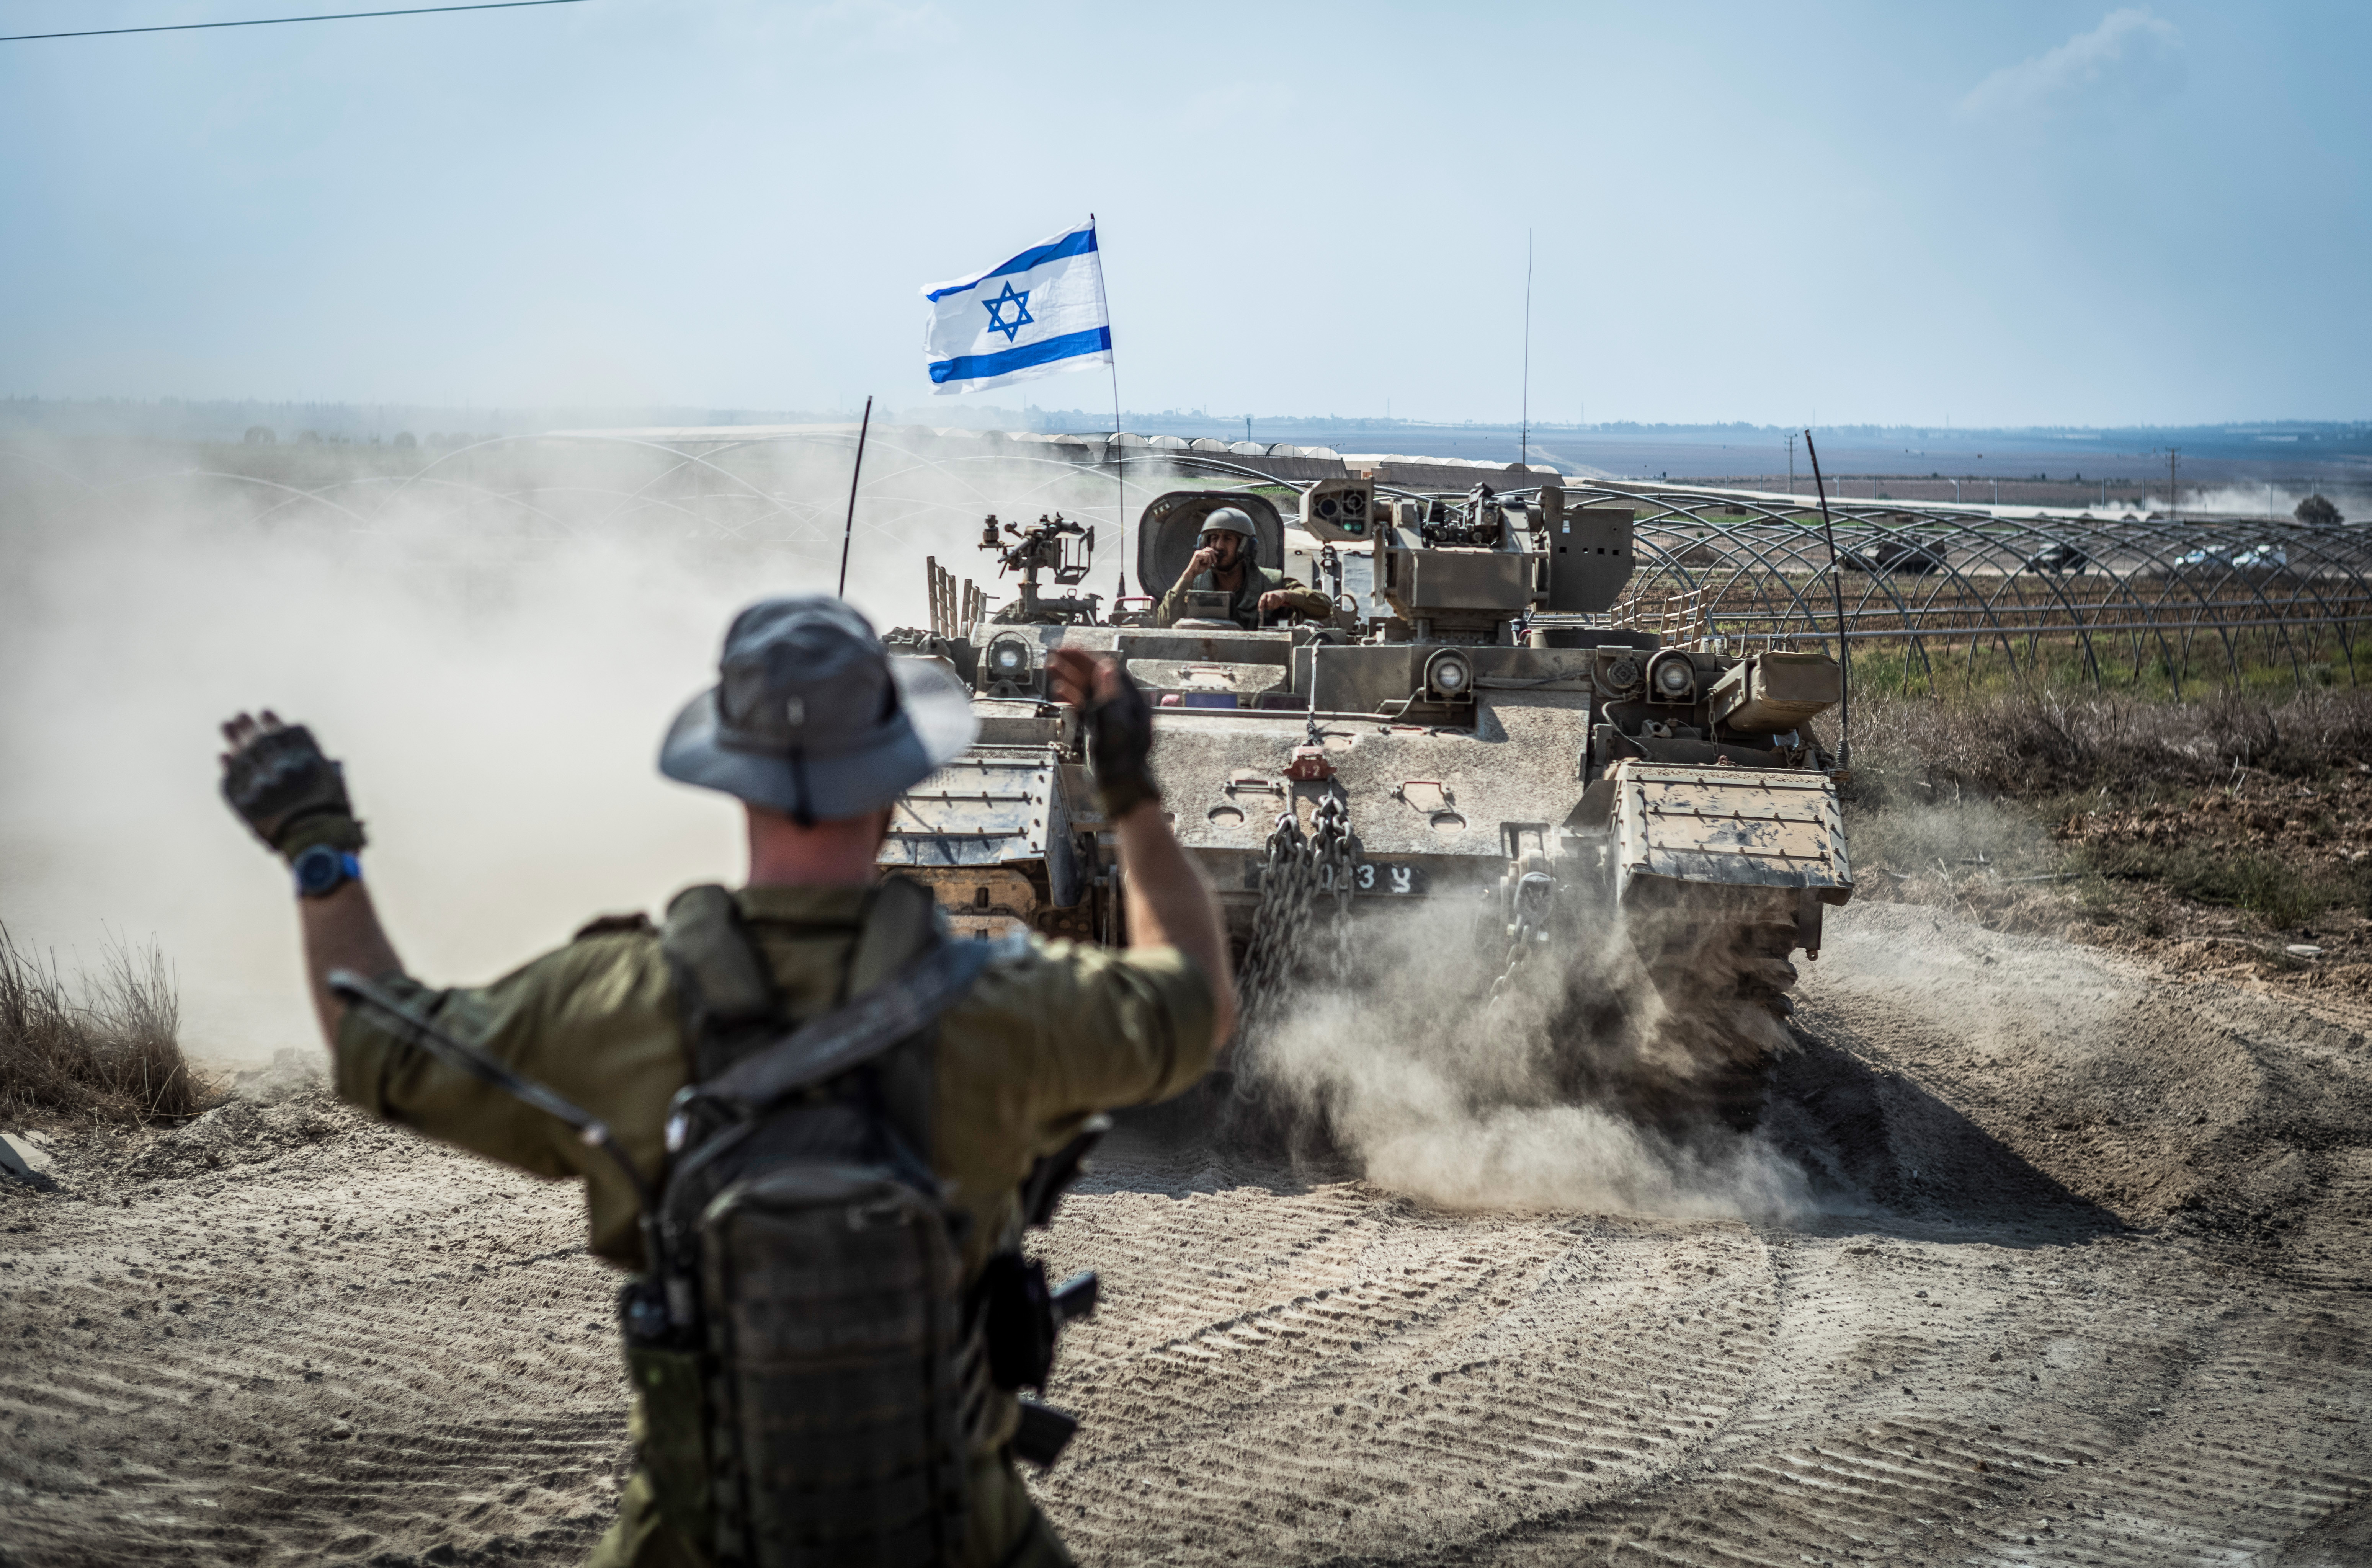 Guerra entre Israel y Gaza, en directo | El ejército israelí se prepara para atacar Gaza por “tierra, mar y aire”